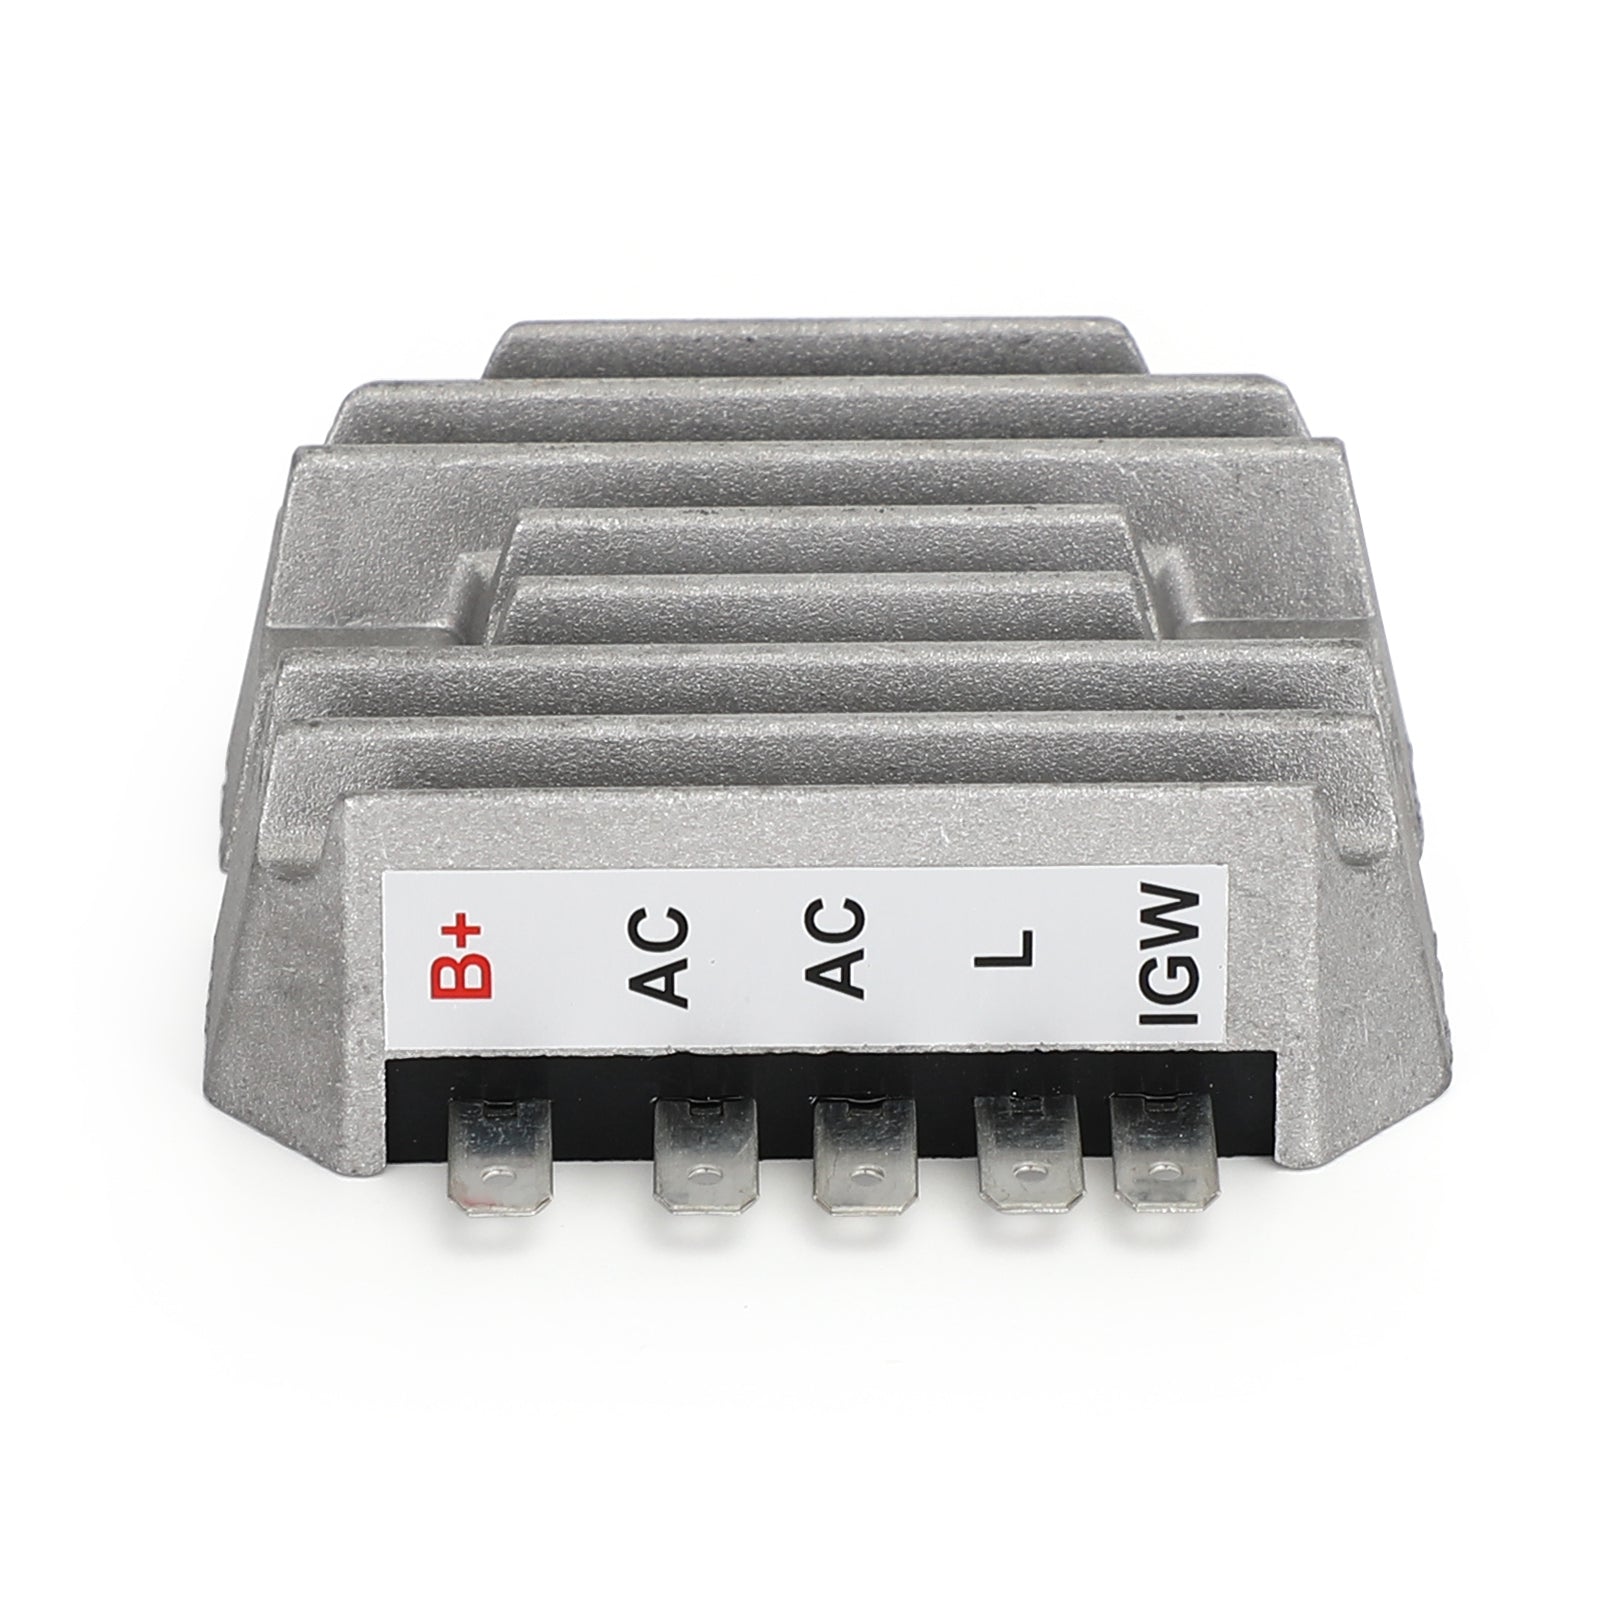 Raddrizzatore regolatore di tensione per tosaerba commerciale John Deere F915 AM101406 generico